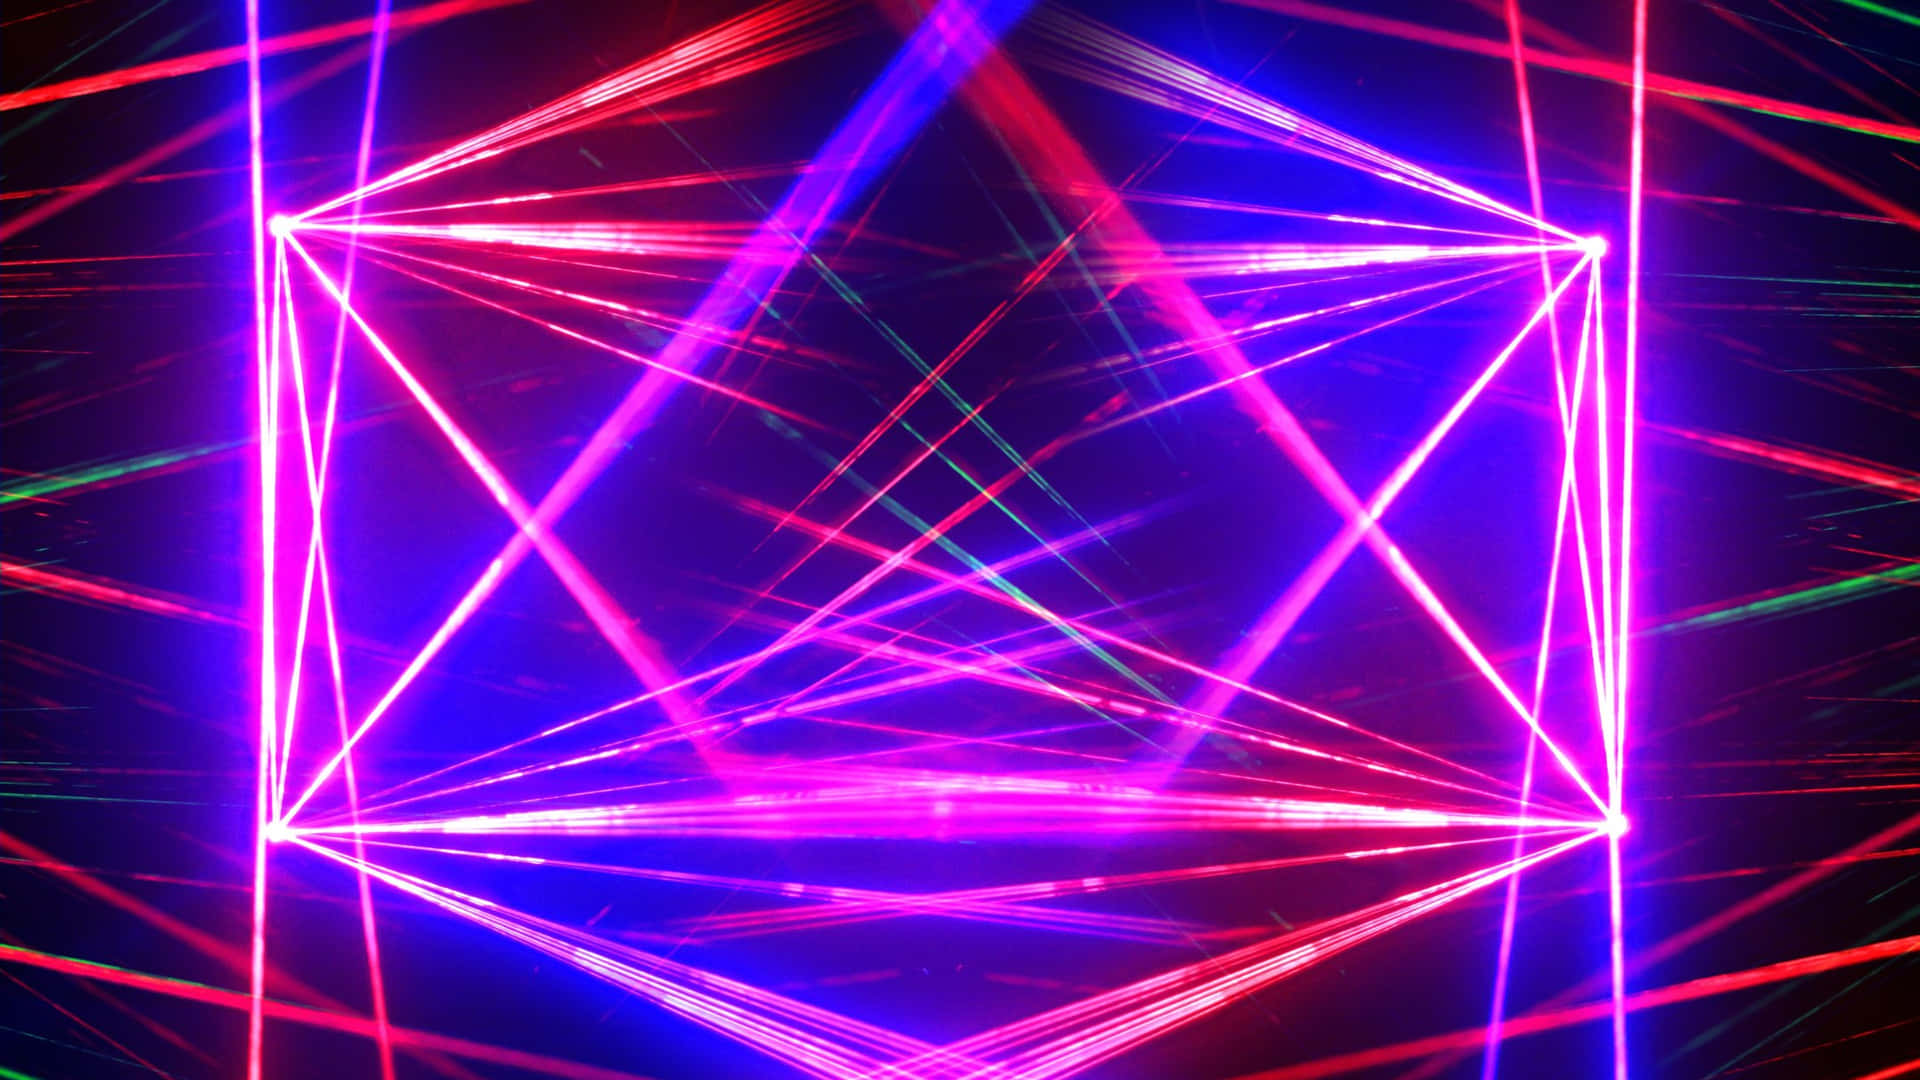 Vibrant Laser Light Show Wallpaper